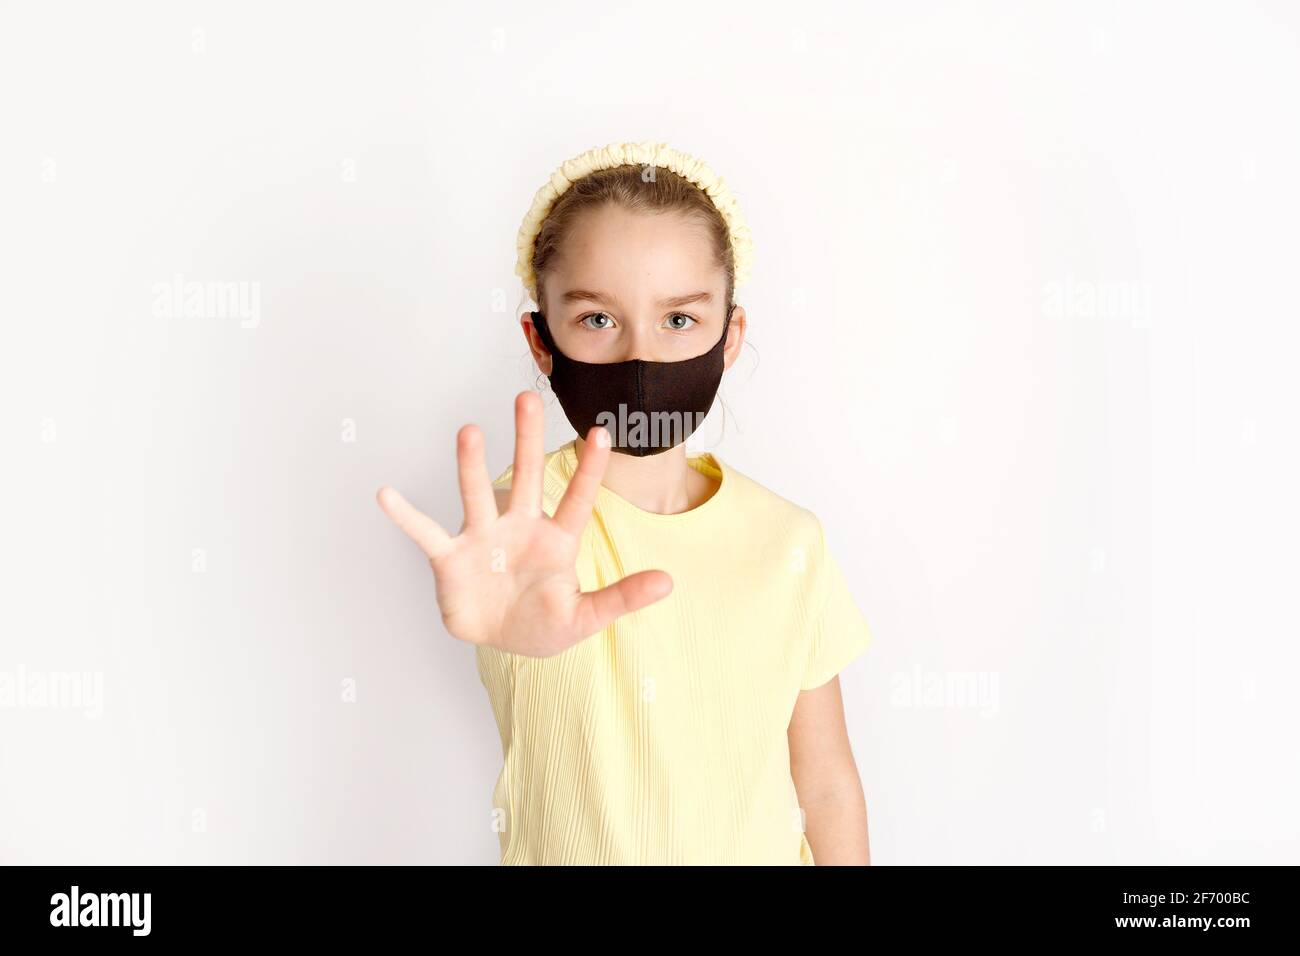 Ein Schulmädchen in einer schwarzen Schutzmaske lenkt die Aufmerksamkeit auf die Korrektheit und das obligatorische Tragen von Schutzmasken. Stockfoto